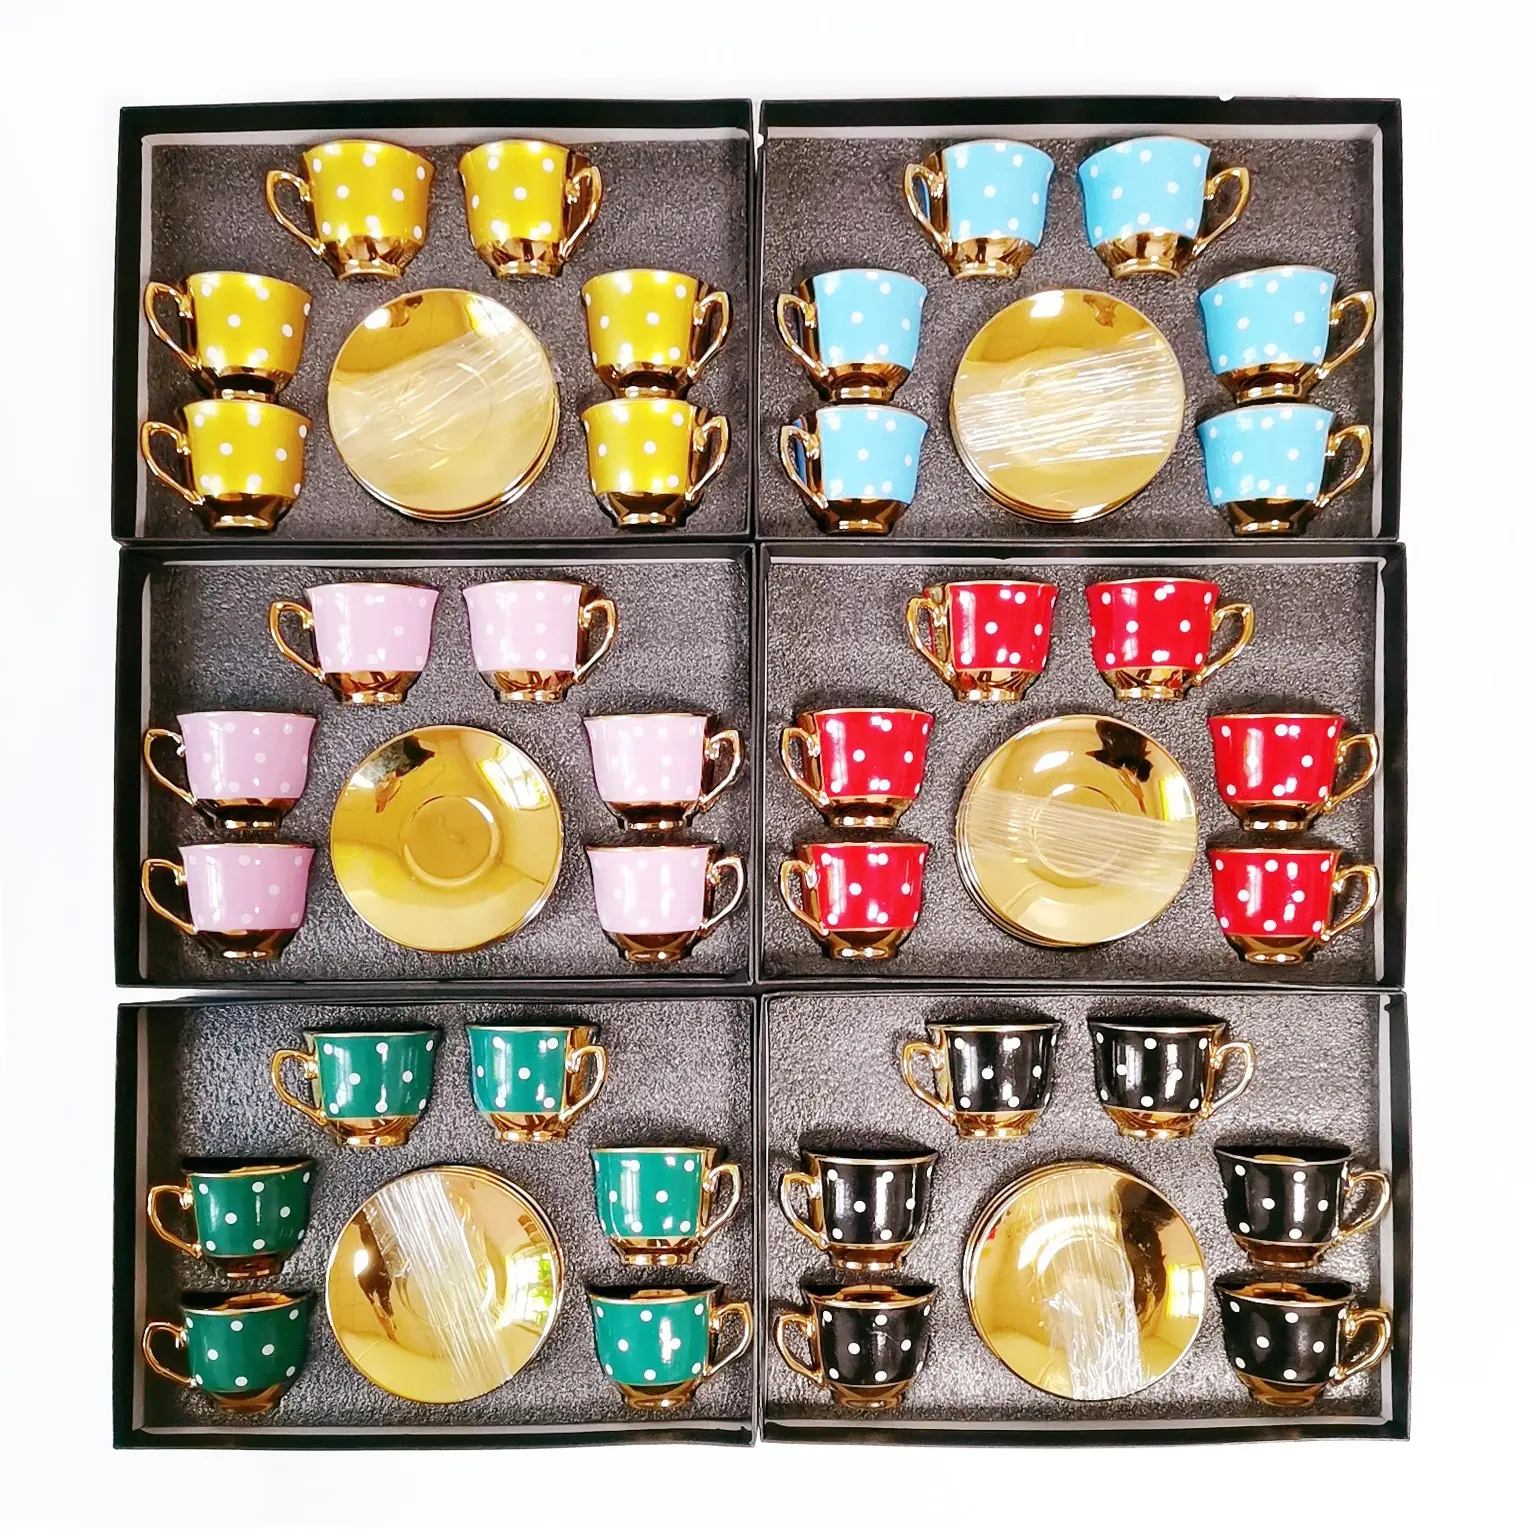 Cangkir dan Piring Dilapisi Keramik Arab Set Teh Kopi Emas 6 Cangkir dan 6 Piring Cangkir Hadiah Set Teh Turki Emas